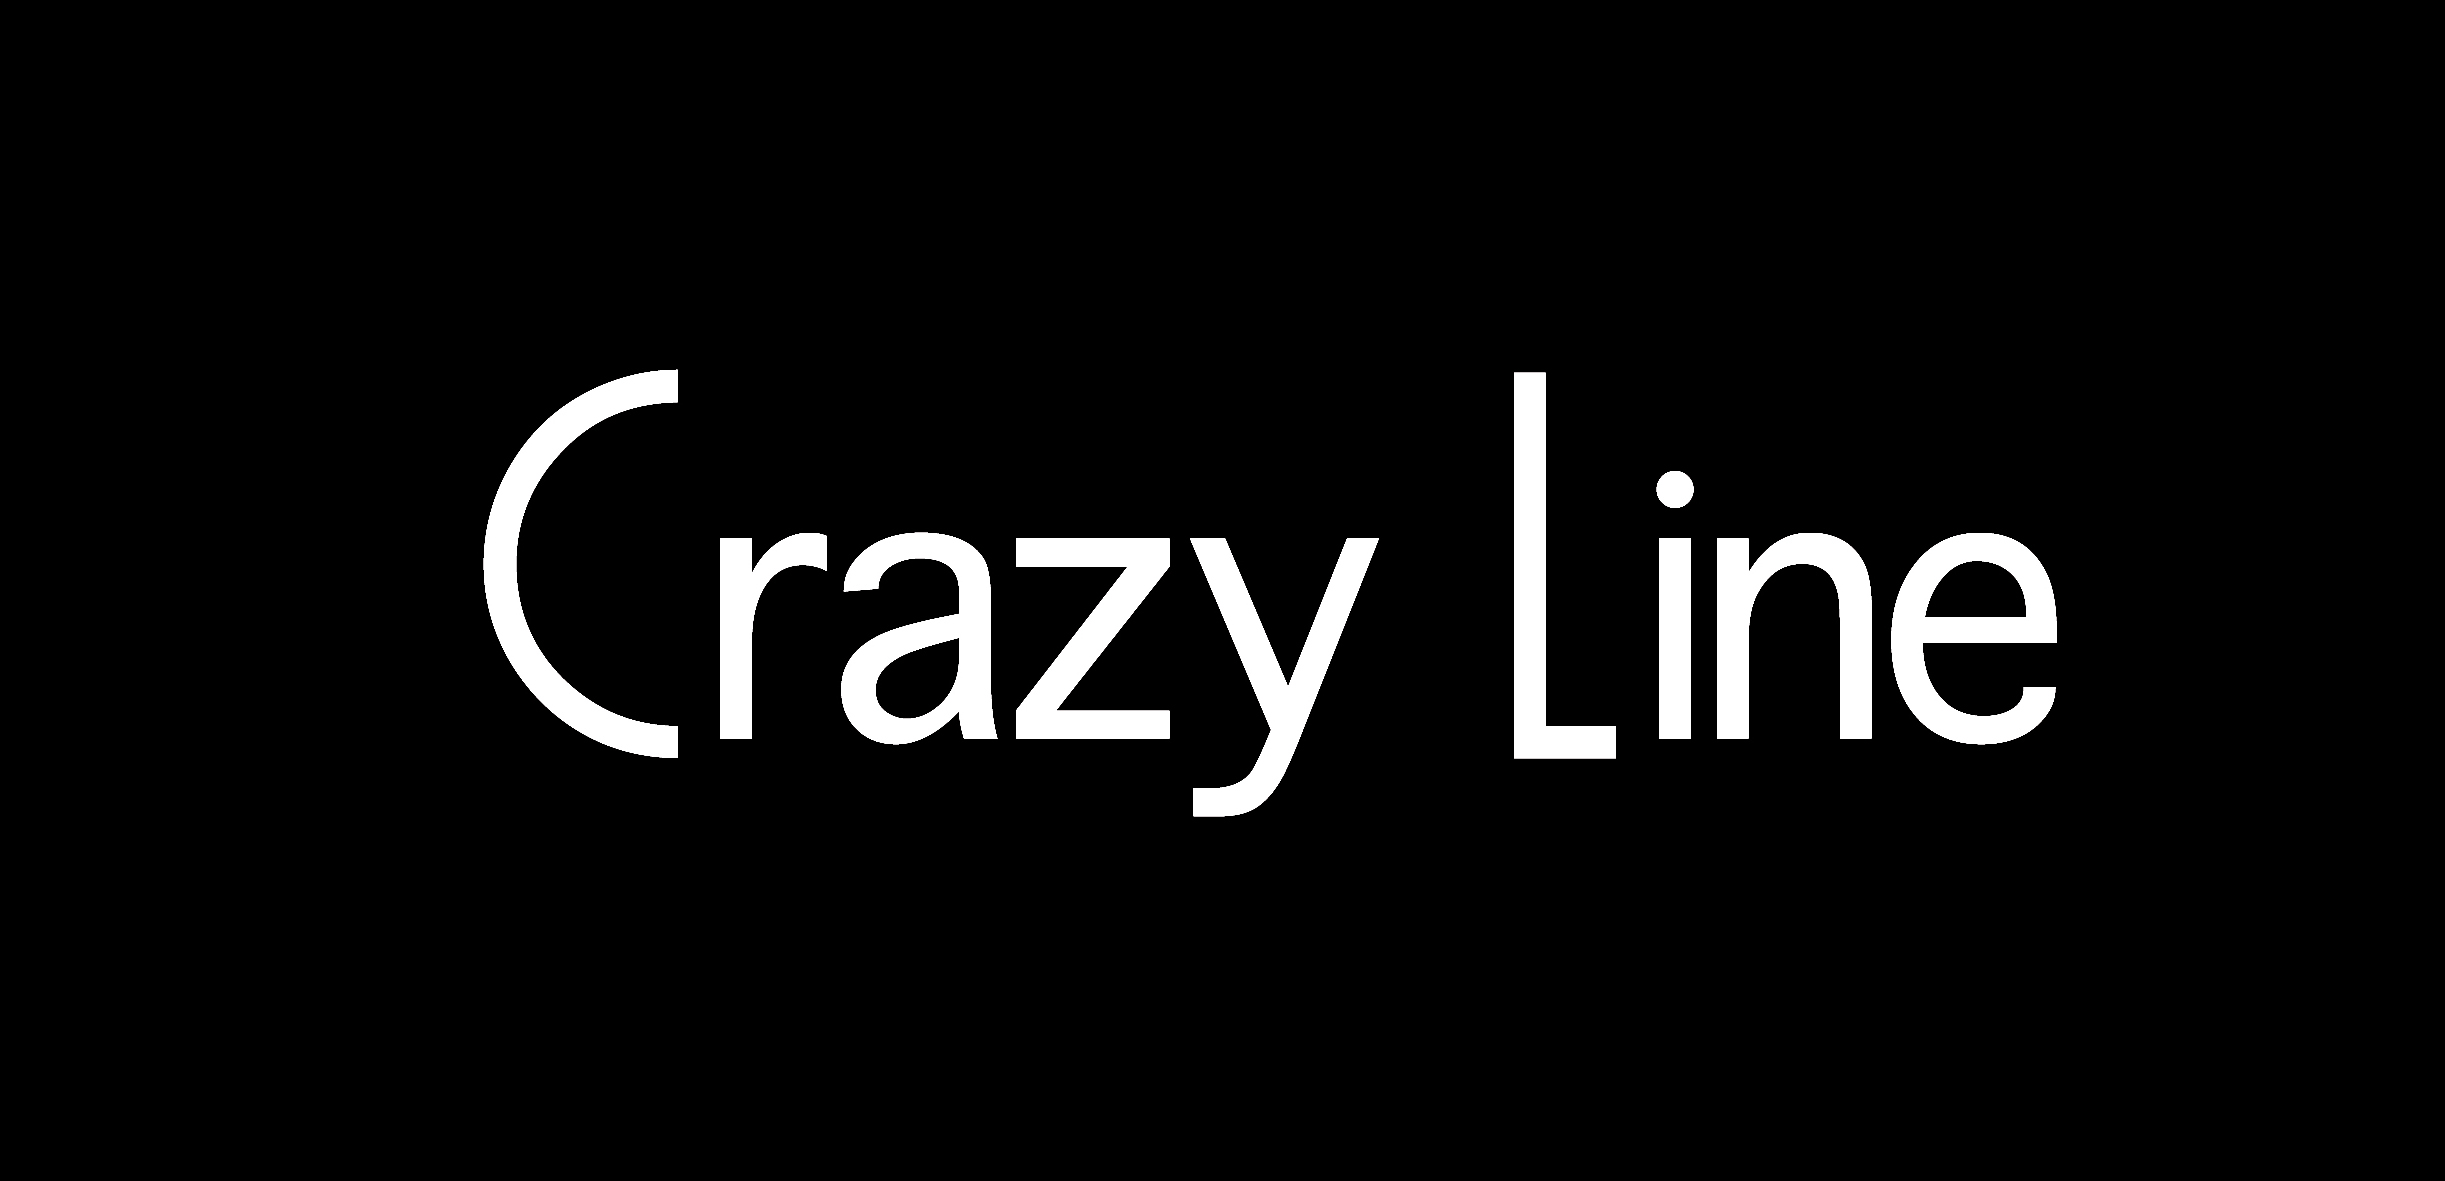 Crazy Line